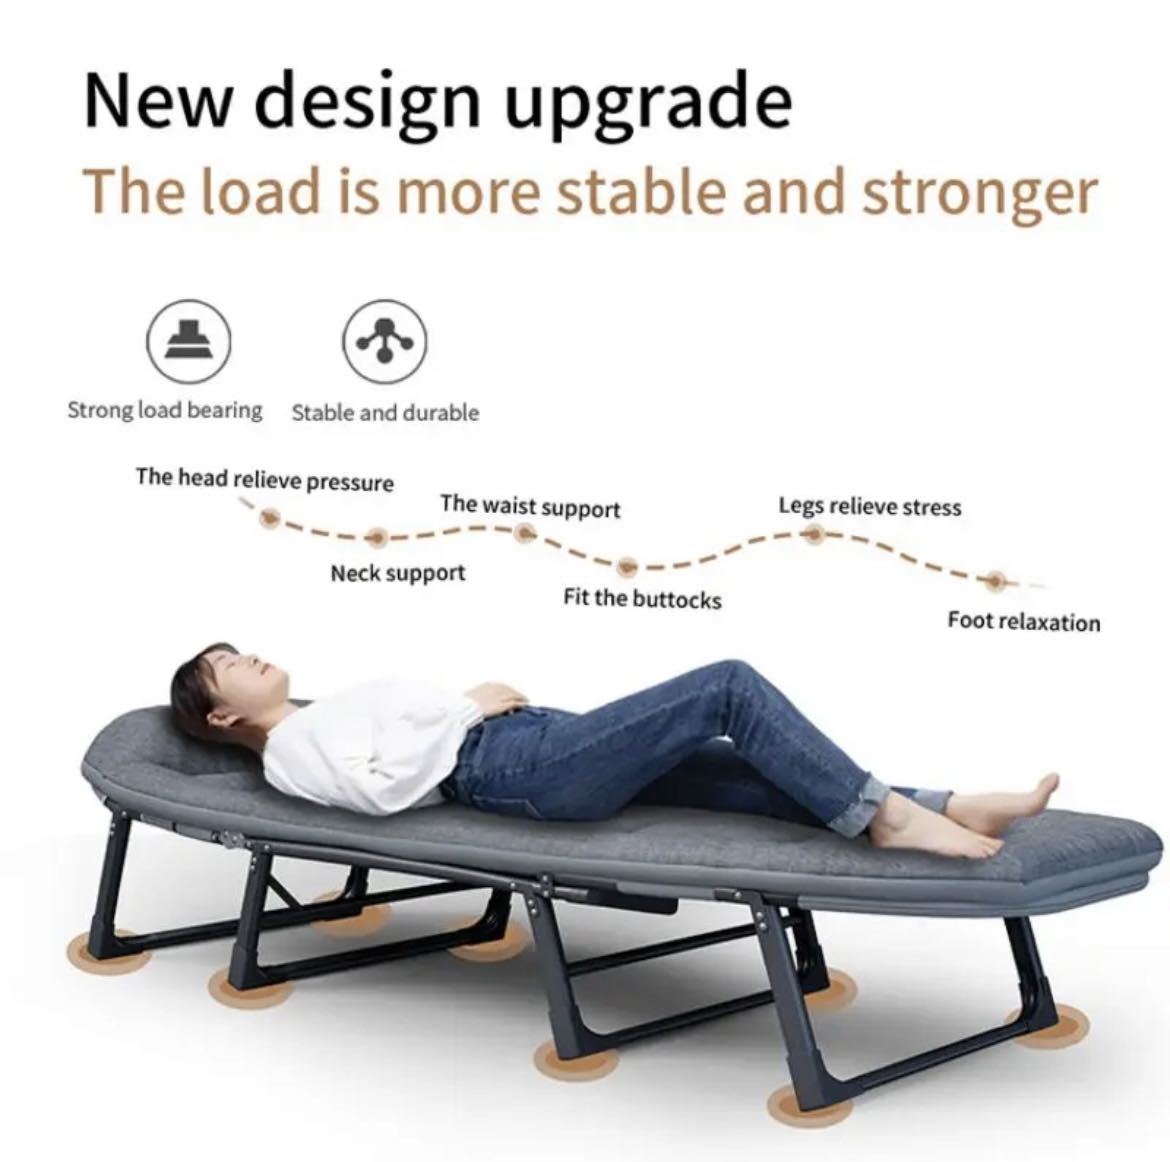  складной bed одиночный металлический bed bed салон мебель 6 механизм настройка возможность дизайн офис отдых портативный 